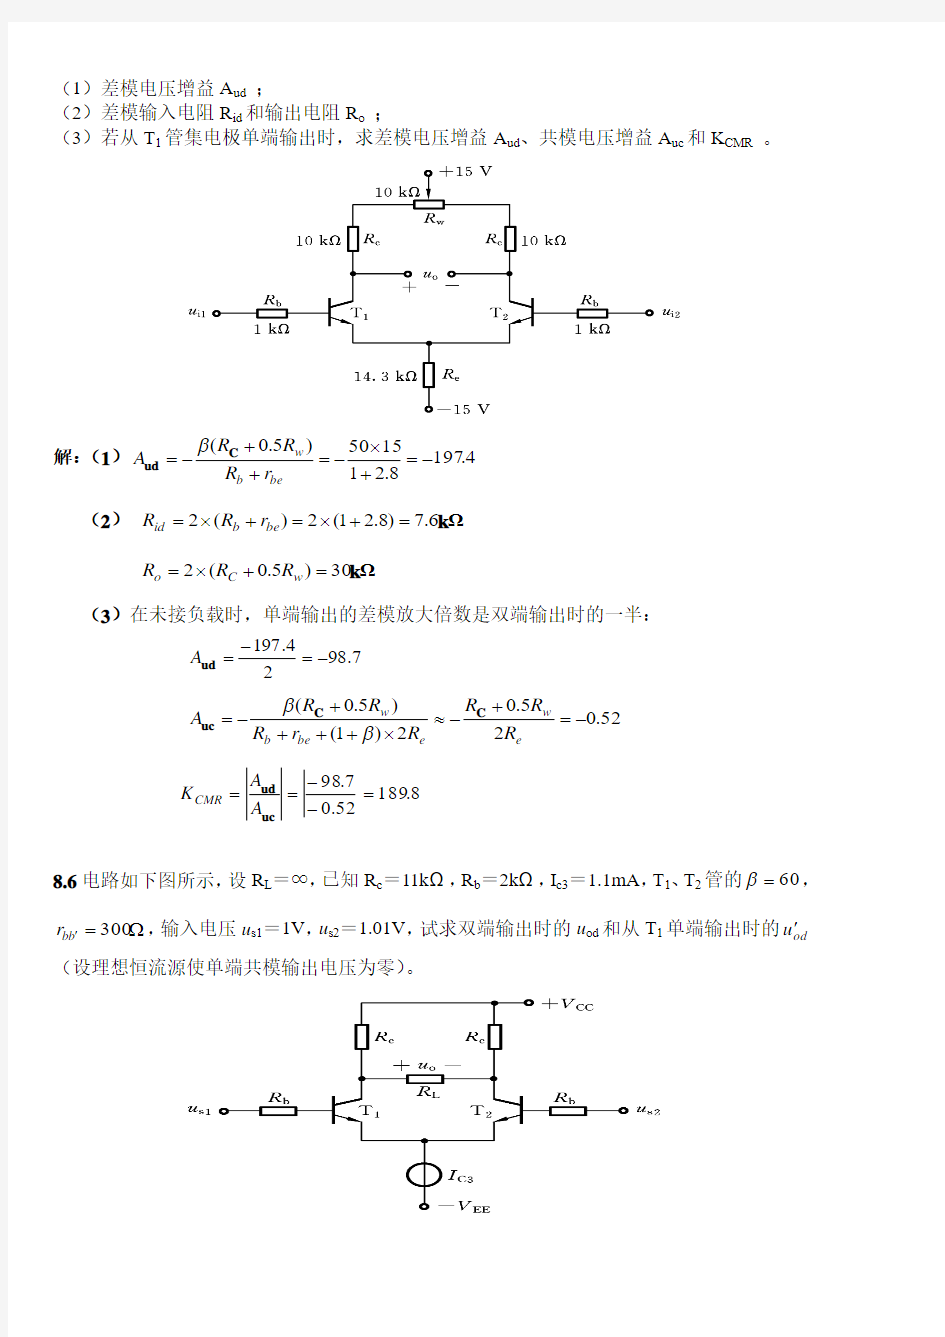 深圳大学模拟电路必考期末试题(老师给的习题,但就是考试题)